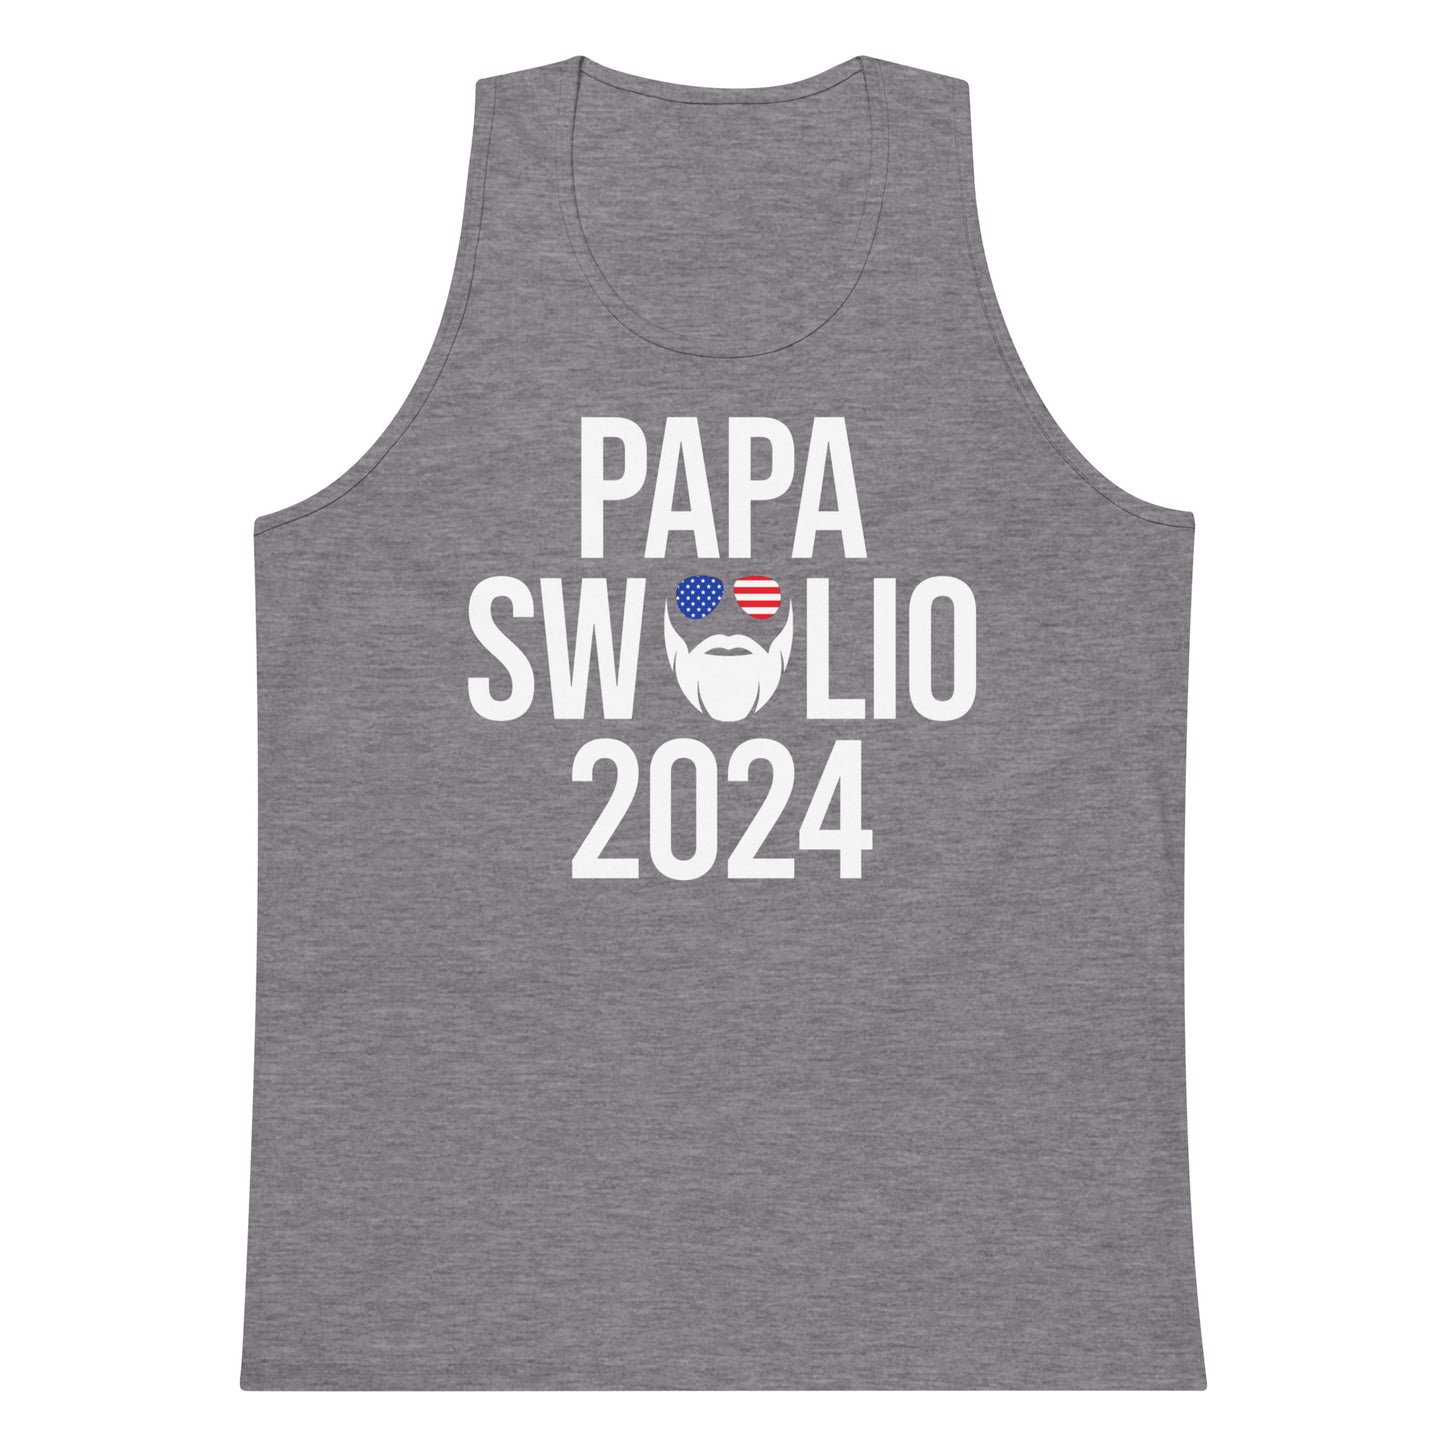 Papa Swolio 2024 Men’s Premium Tank Top